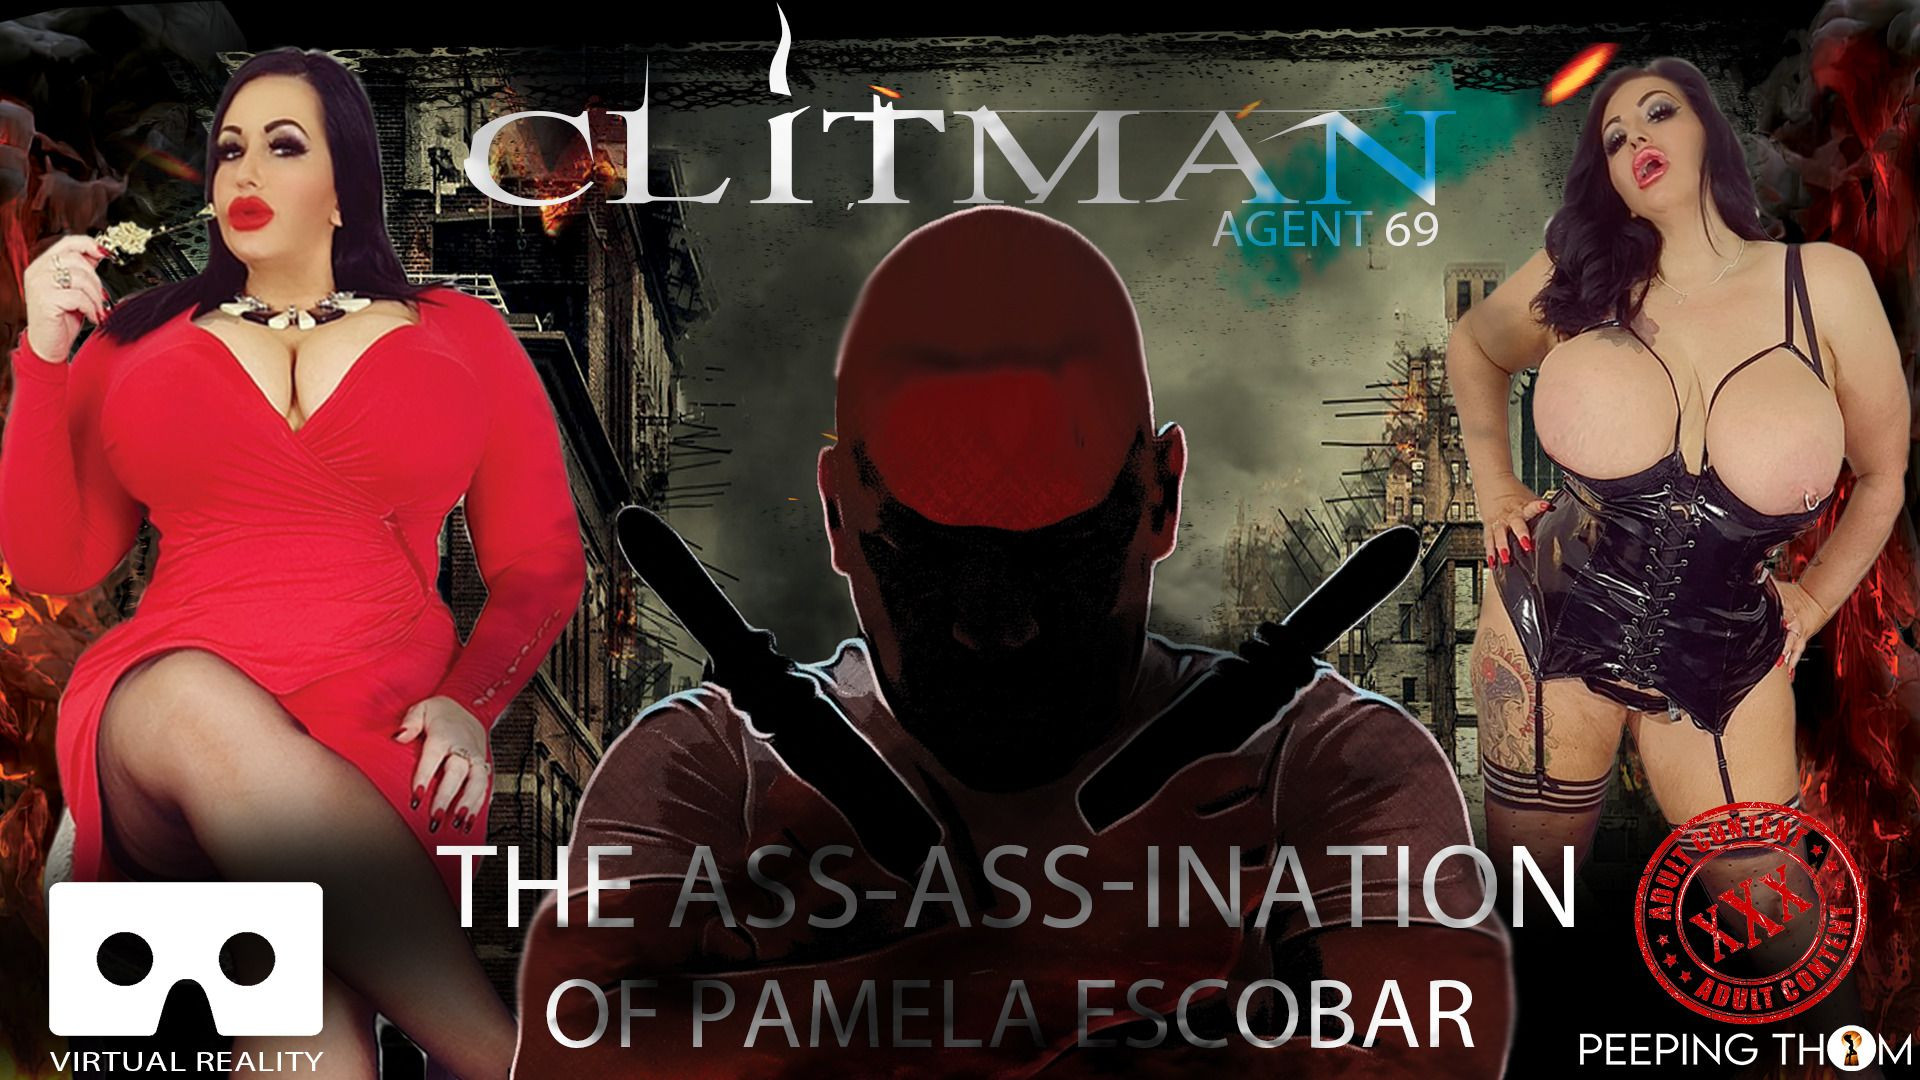 Clitman Agent 69 - Mia MILF is Pamela Escobar: Mia MILF Slideshow